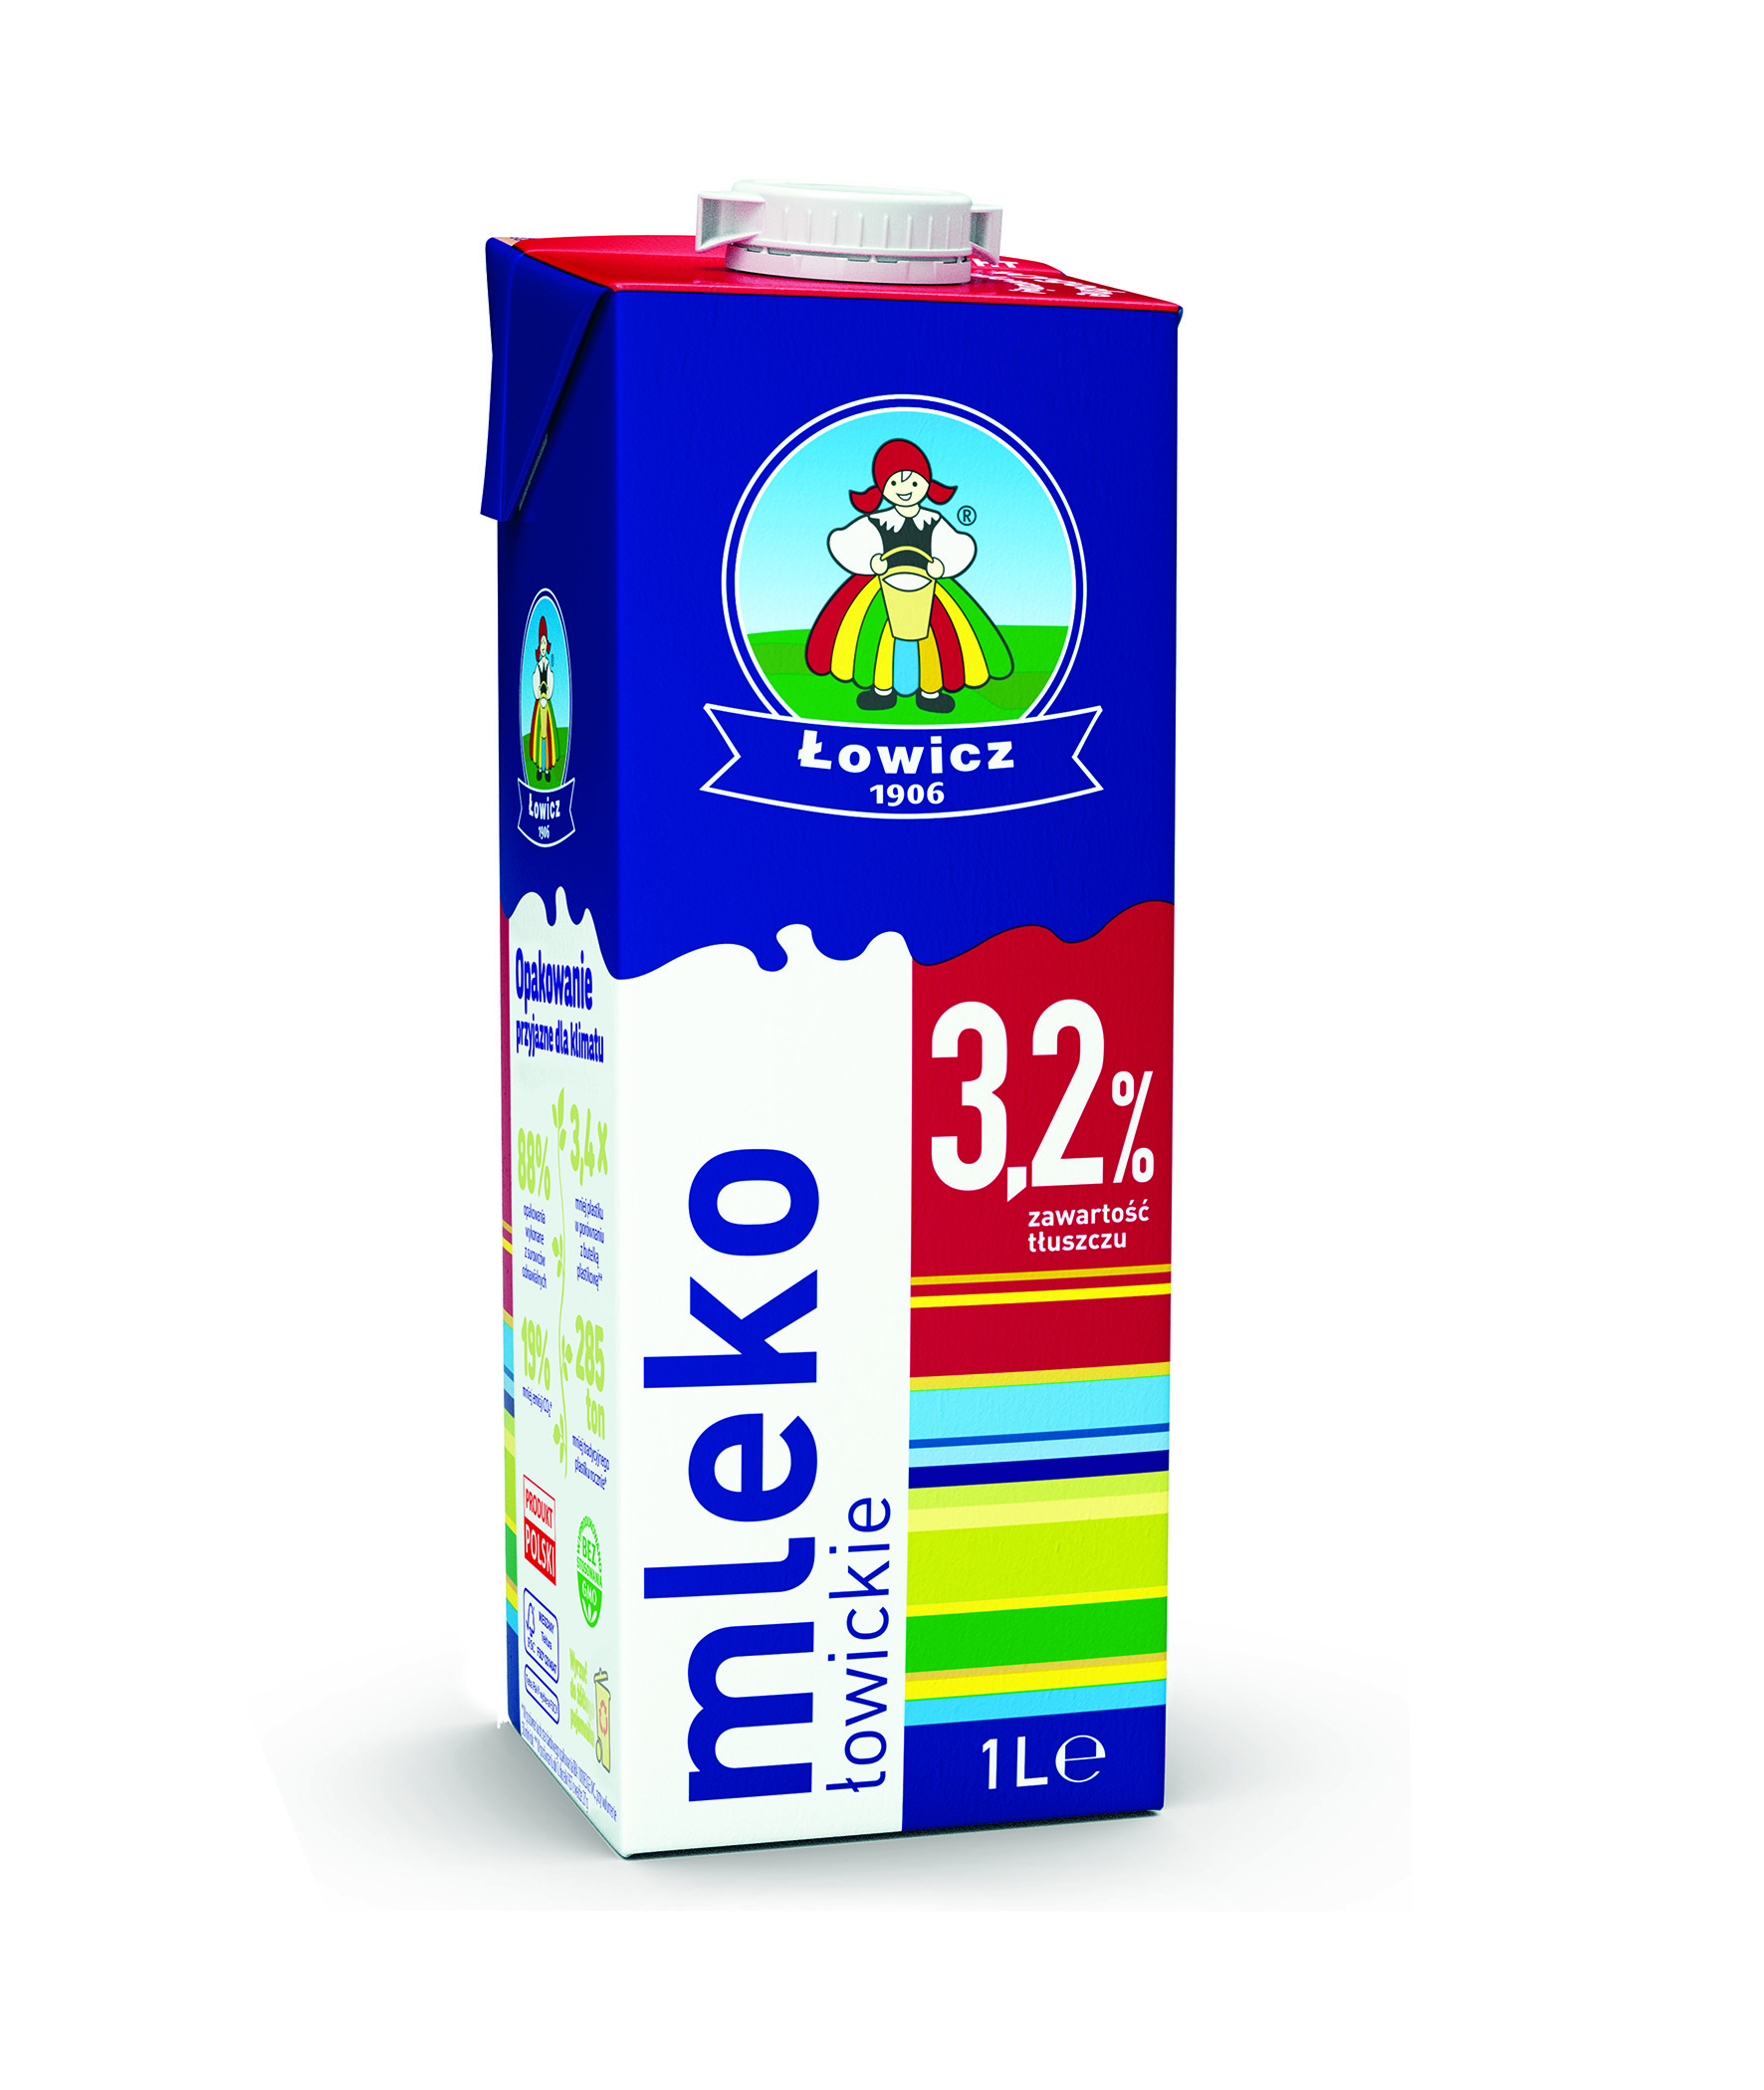 milk UHT 3.2% 1L